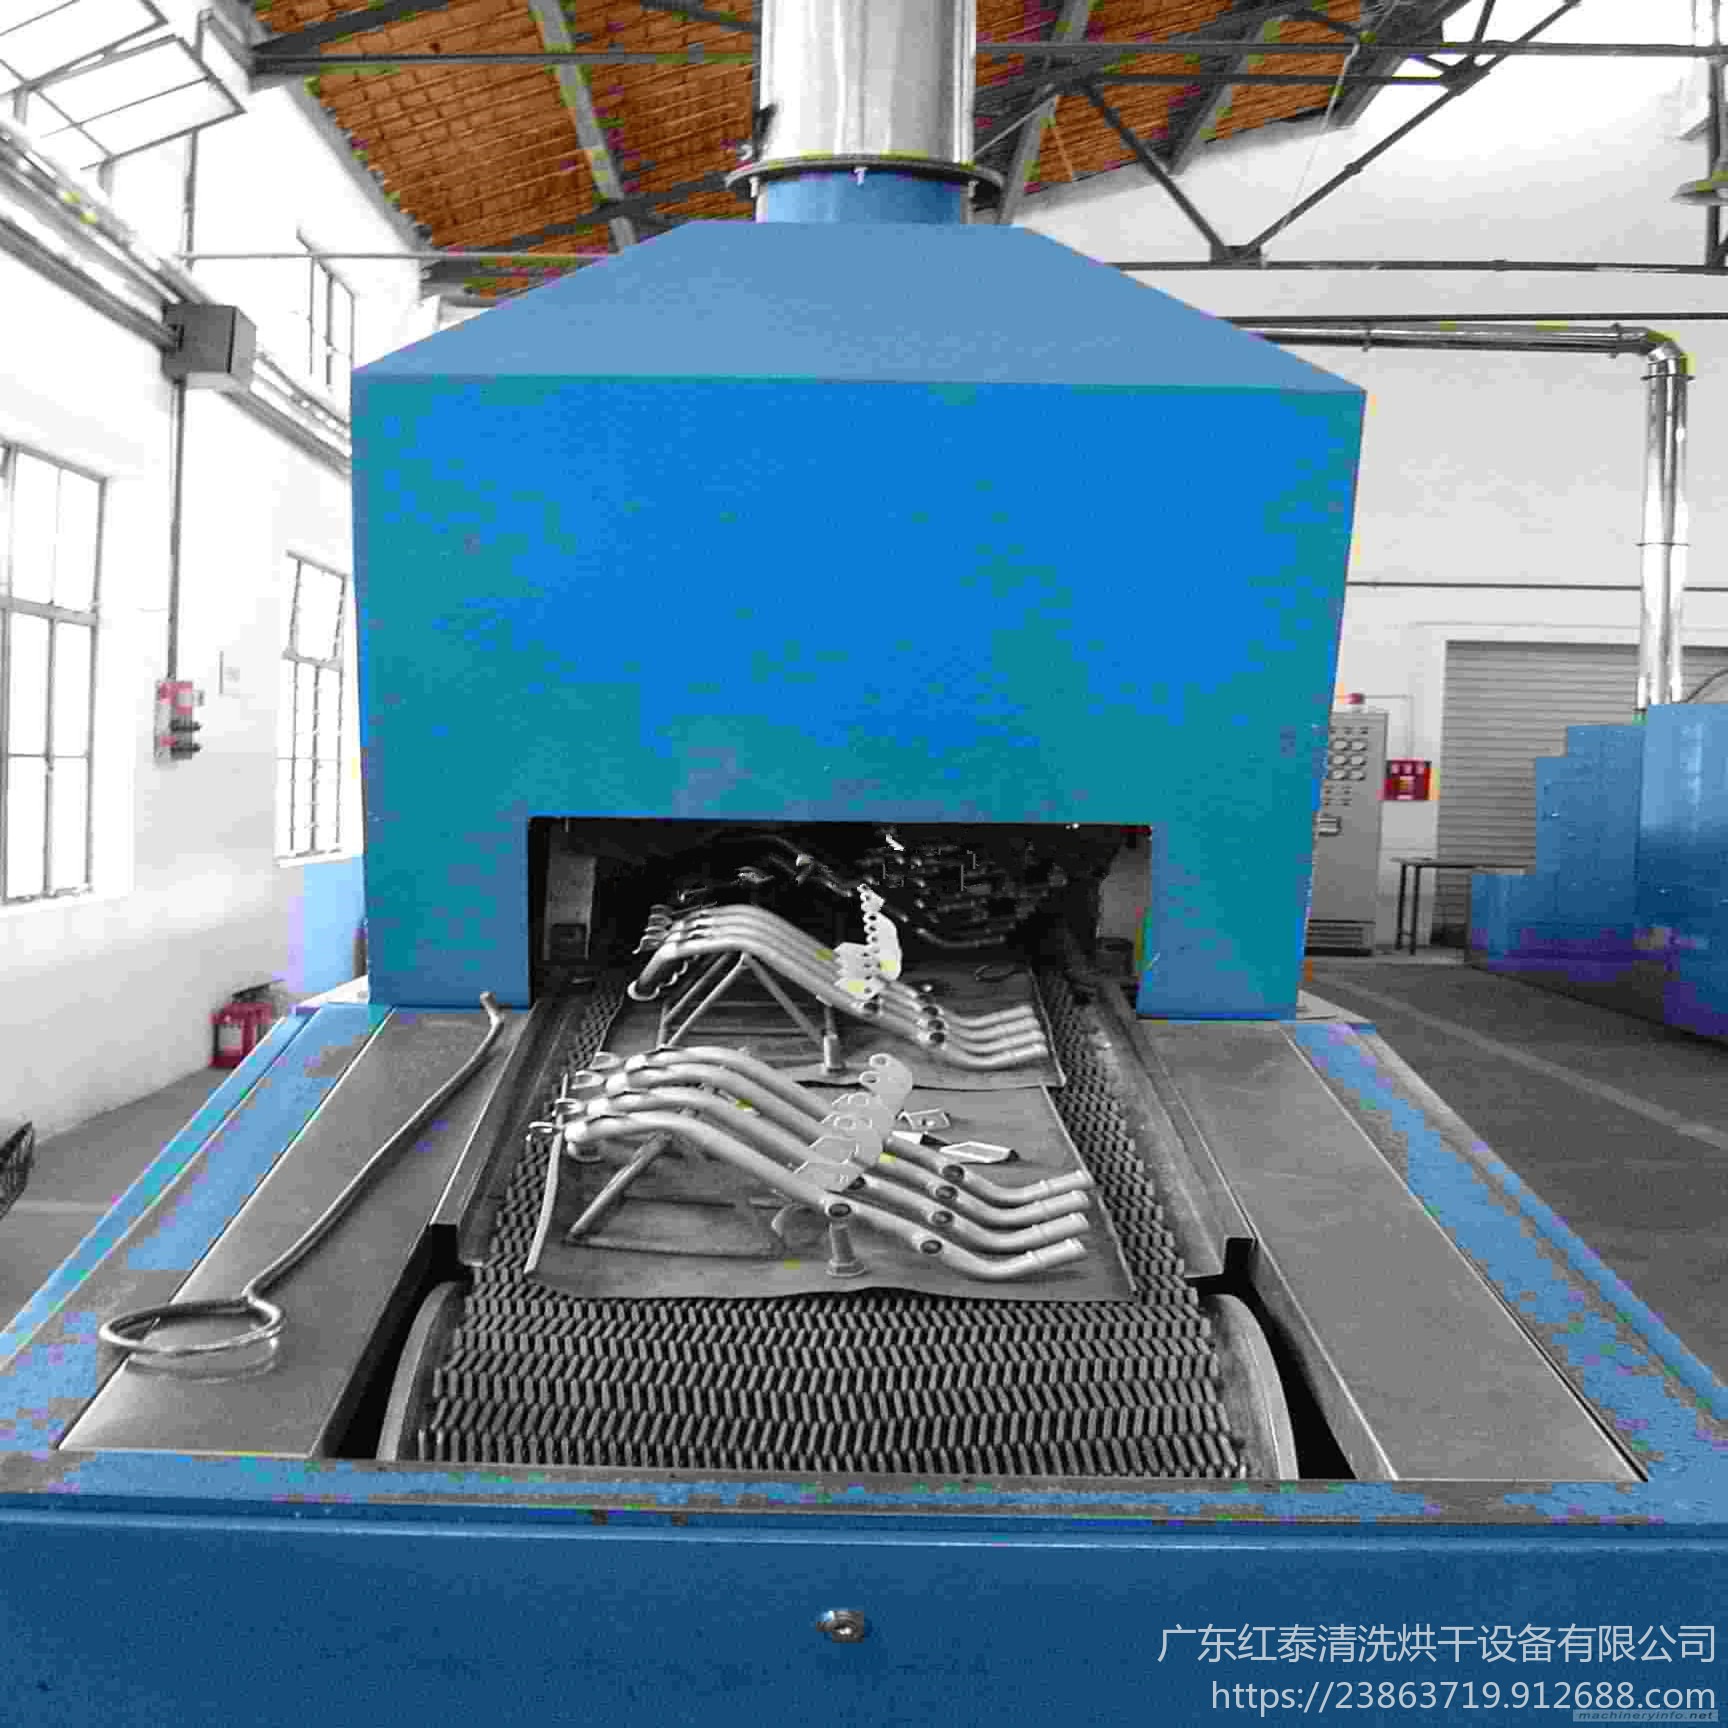 连续式钎焊炉 焊接设备钎焊加工 钎焊炉加工 深圳热处理炉红泰20191127